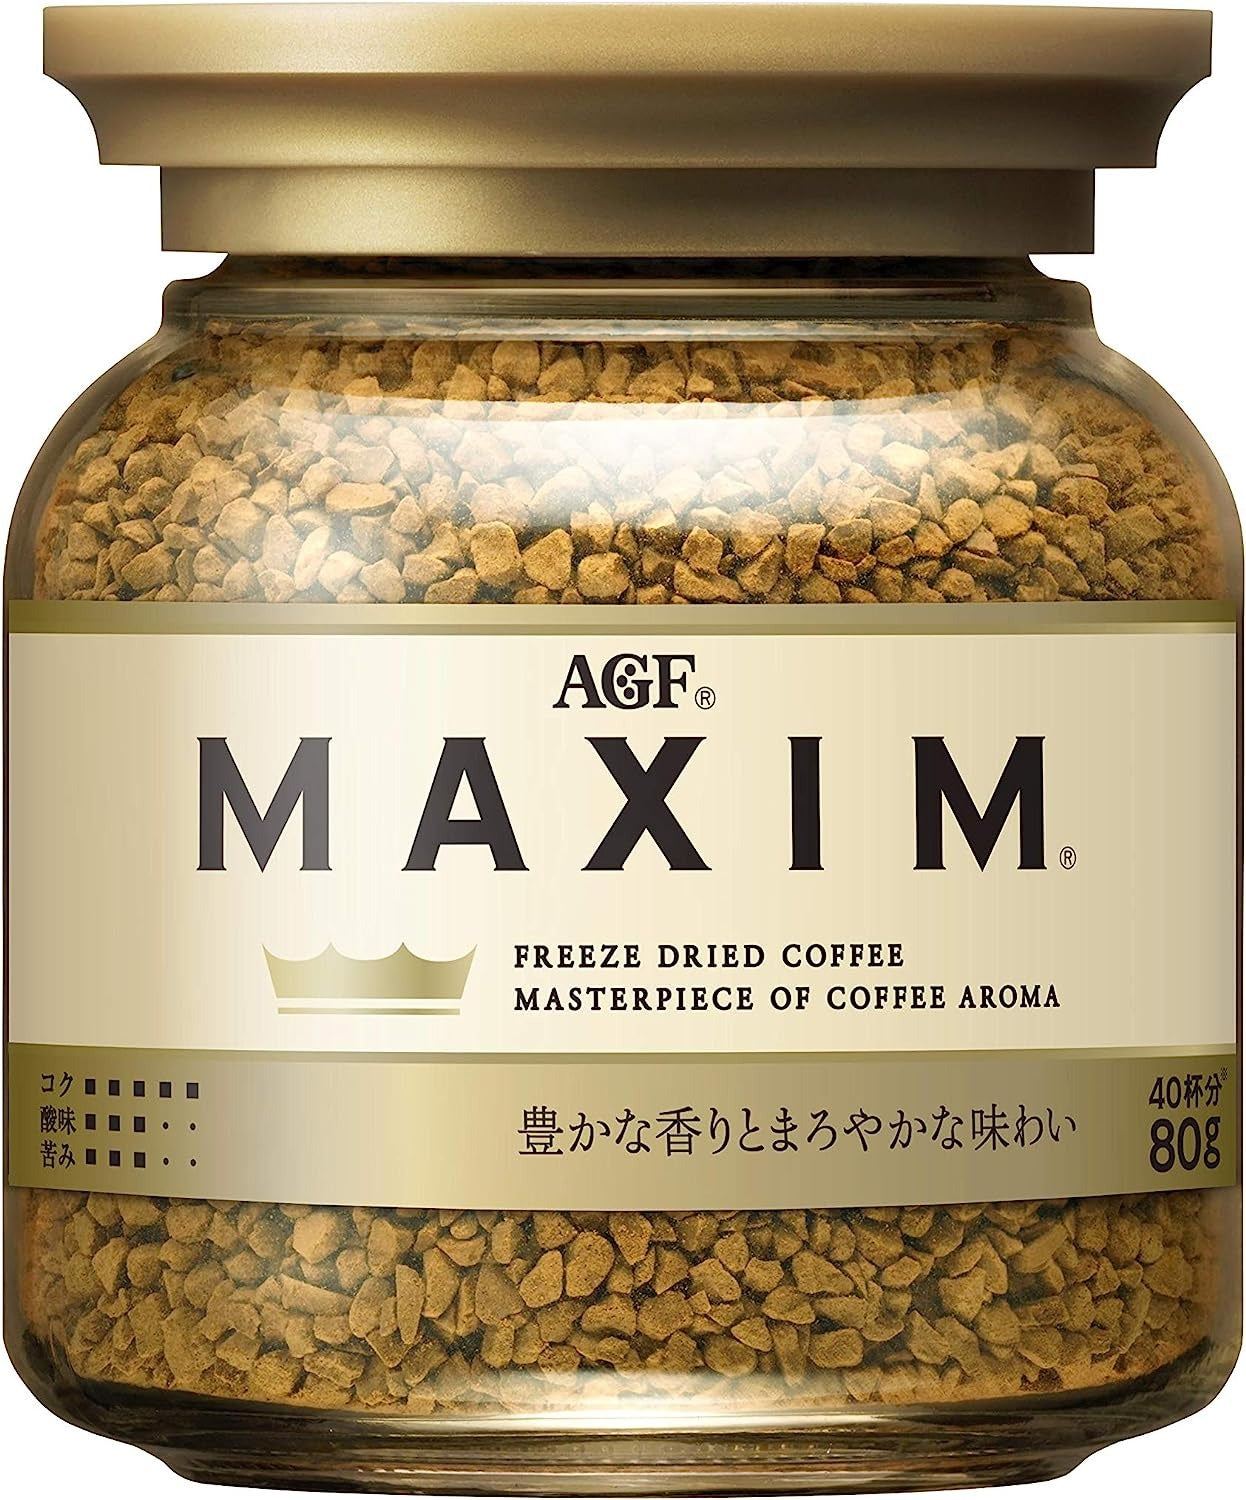 MAXIM Aroma blend Coffee แม็กซิม อโรม่า กาแฟสำเร็จรูป 80g ขวดแก้ว มี2 รสให้เลือก